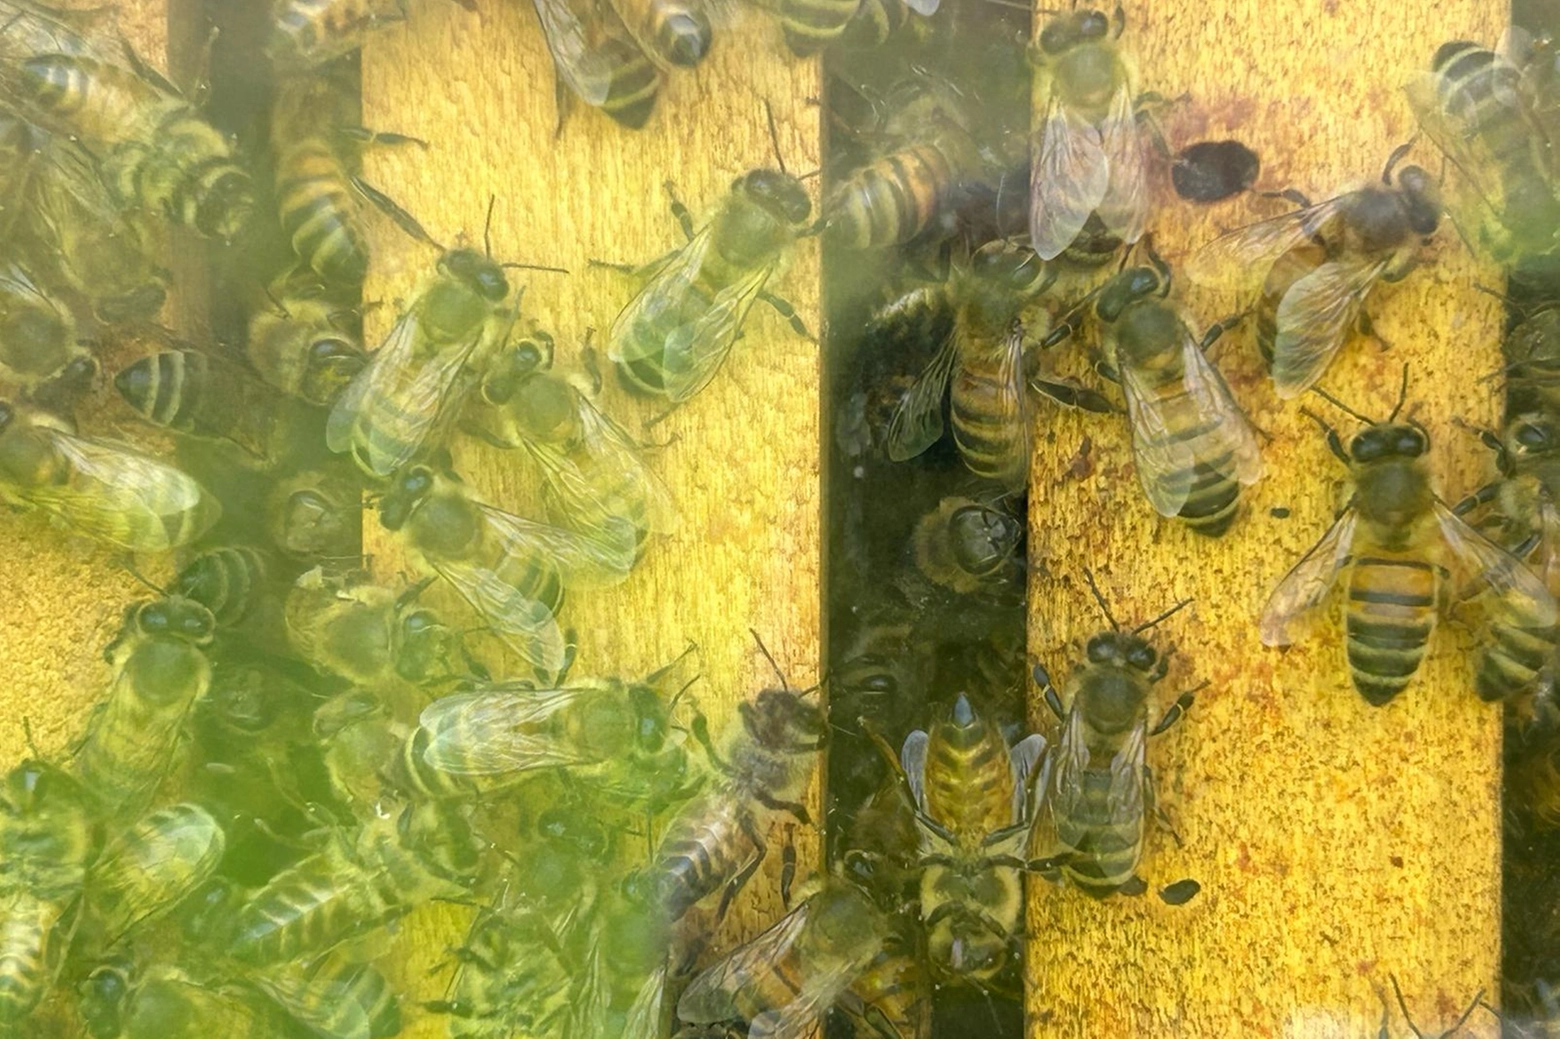 Le api in un alveare aperto che mostra la loro laboriosità